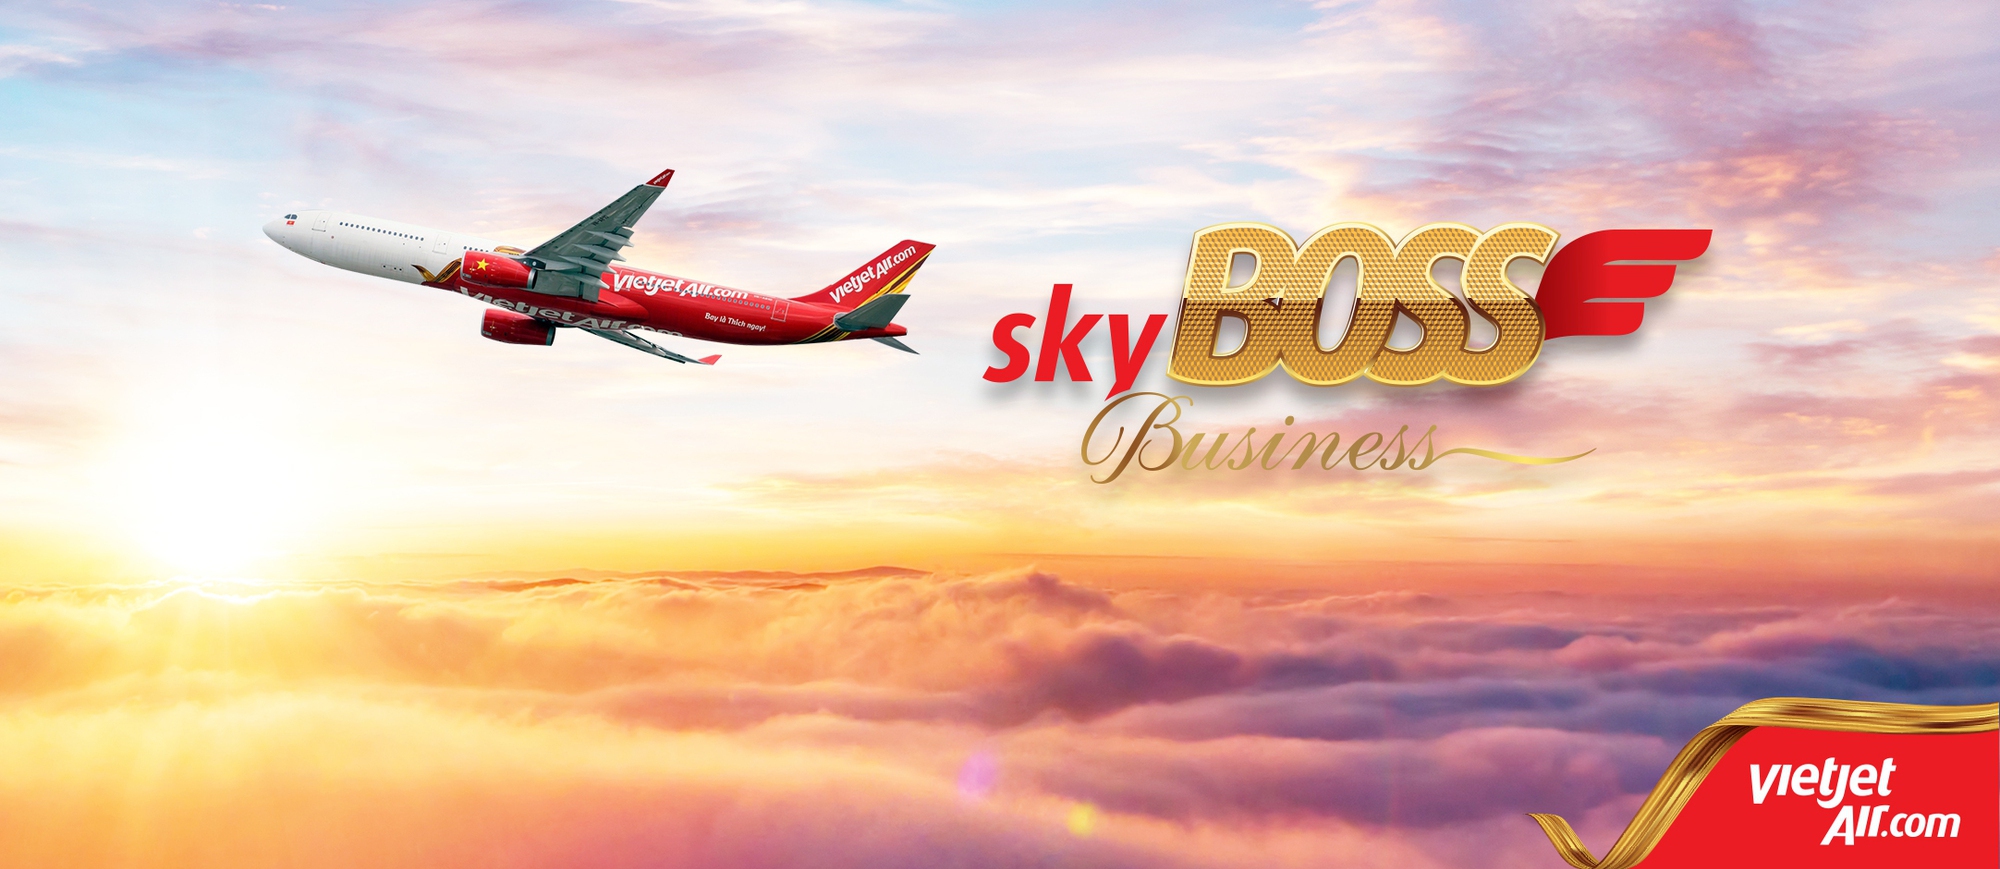 Hạng vé Skyboss Business - Cảm hứng trên những chuyến bay cùng đặc quyền riêng của 'Người dẫn đầu' - Ảnh 1.